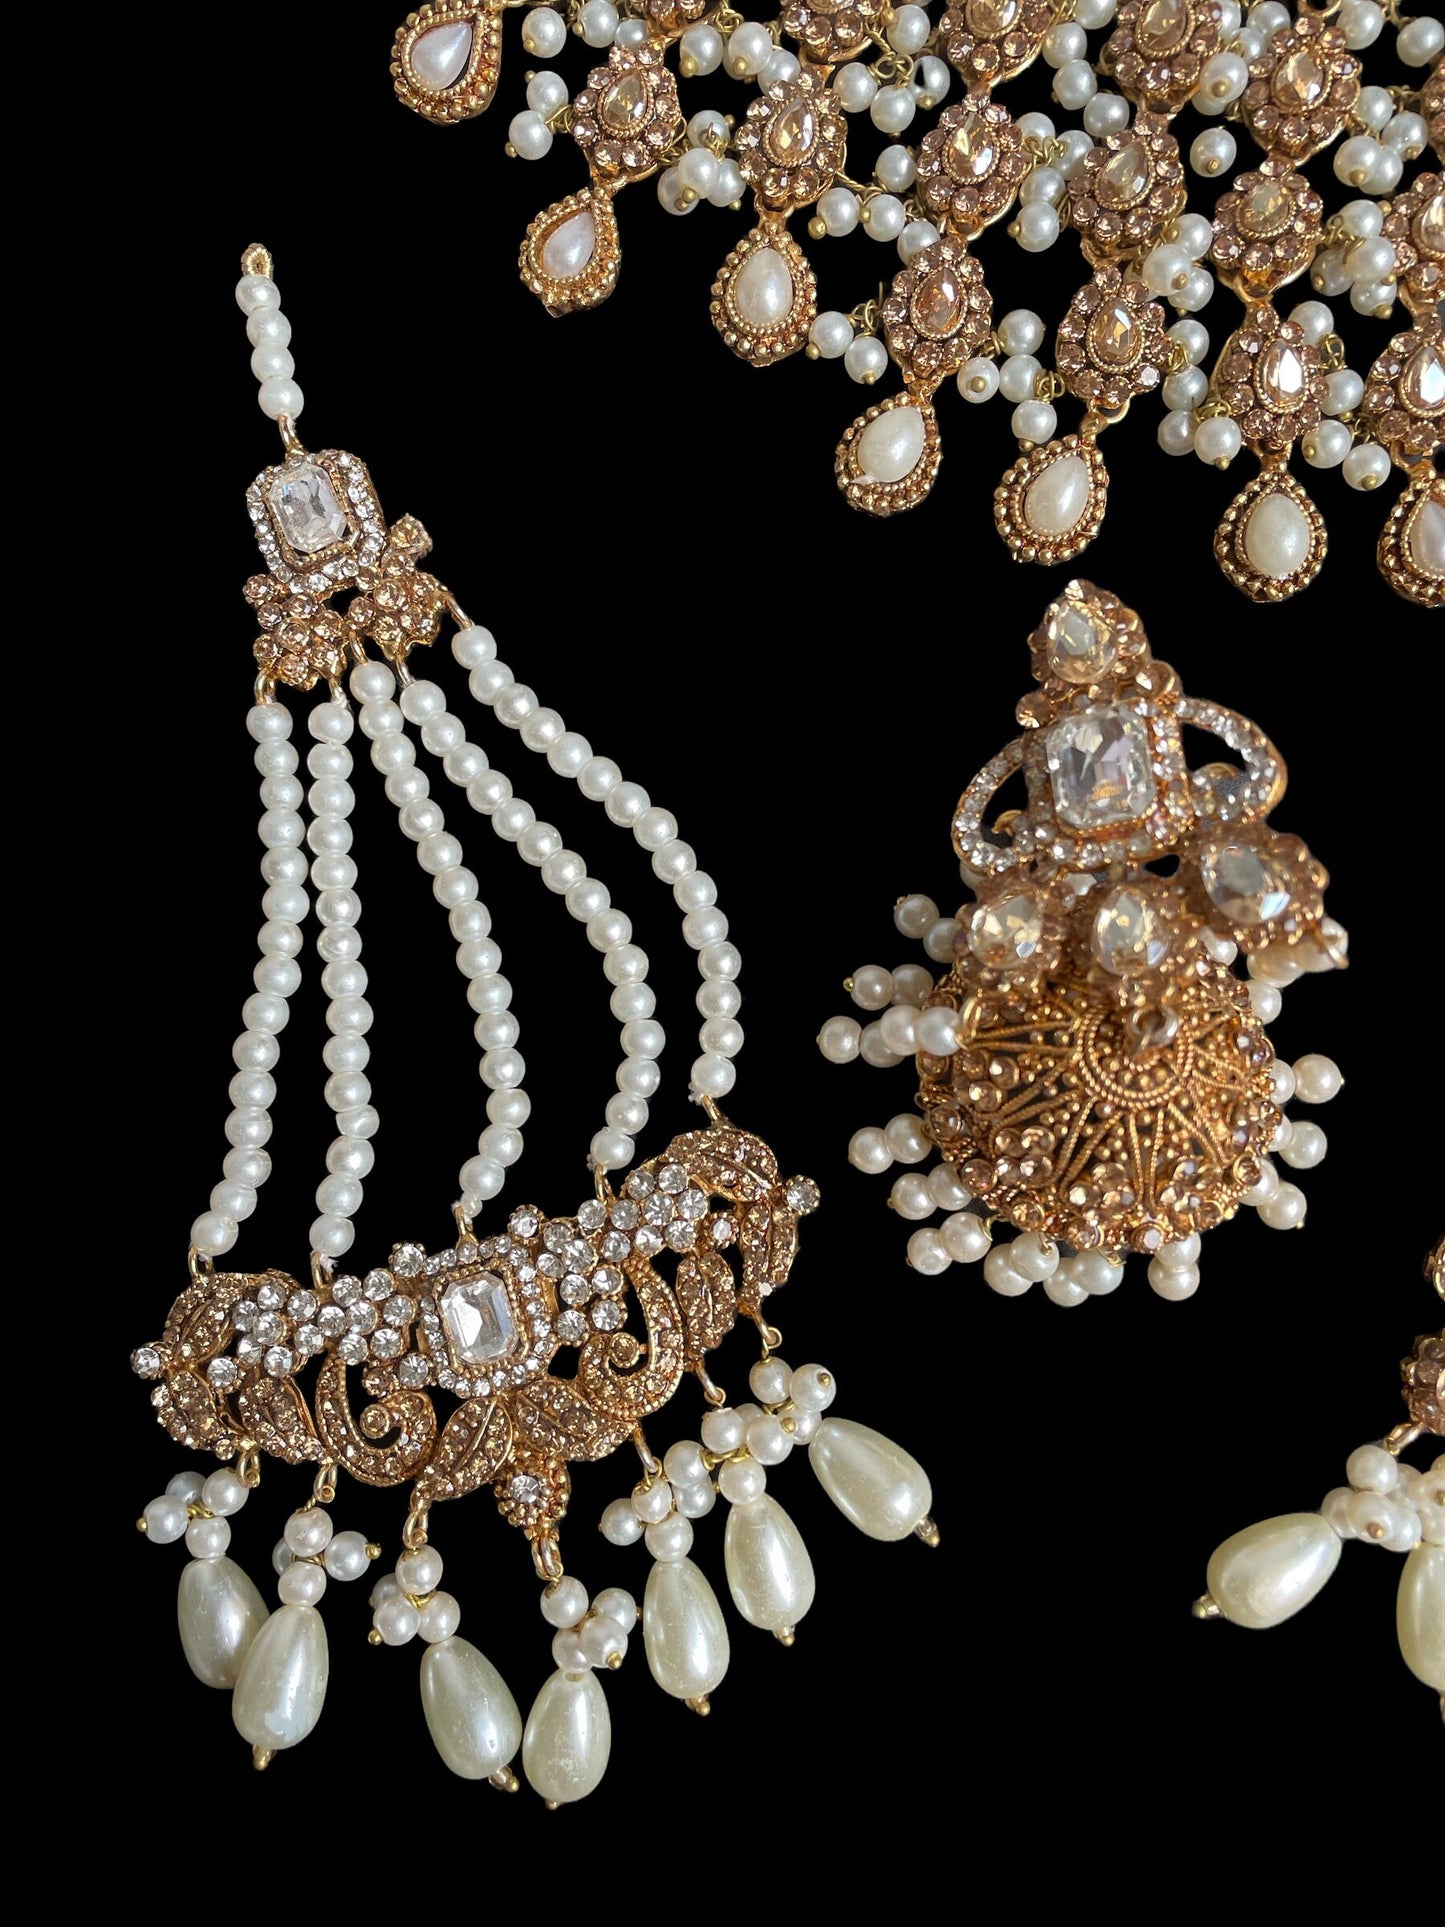 Indian gold and pearls wedding choker/Sabyasachi Indian Jewelry/Kundan necklace set/polki necklace/Pakistani wedding necklace/Bridal set